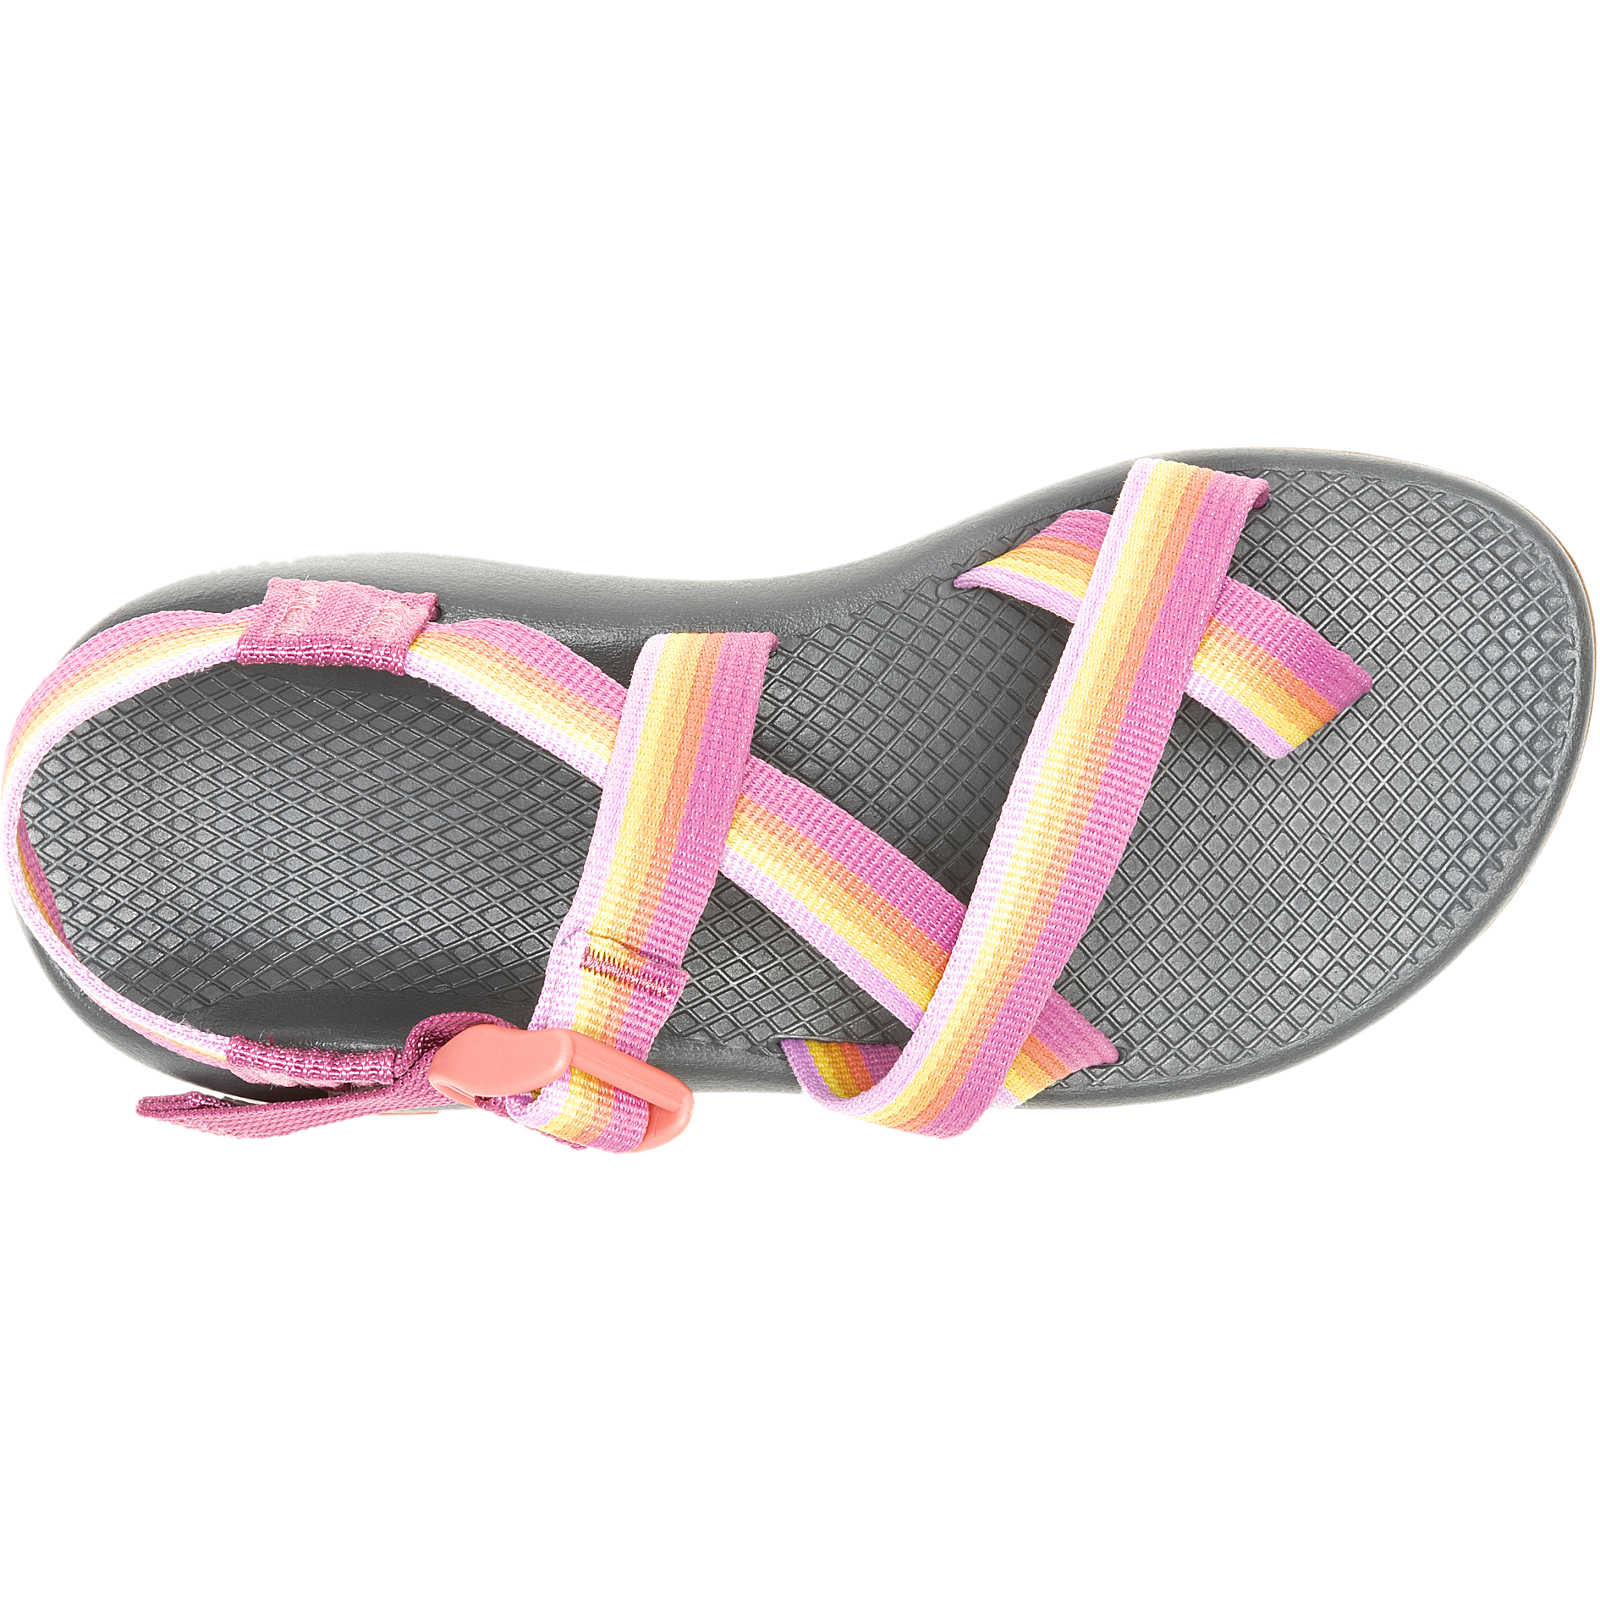 Z2 Classic Sandal for Women - S24